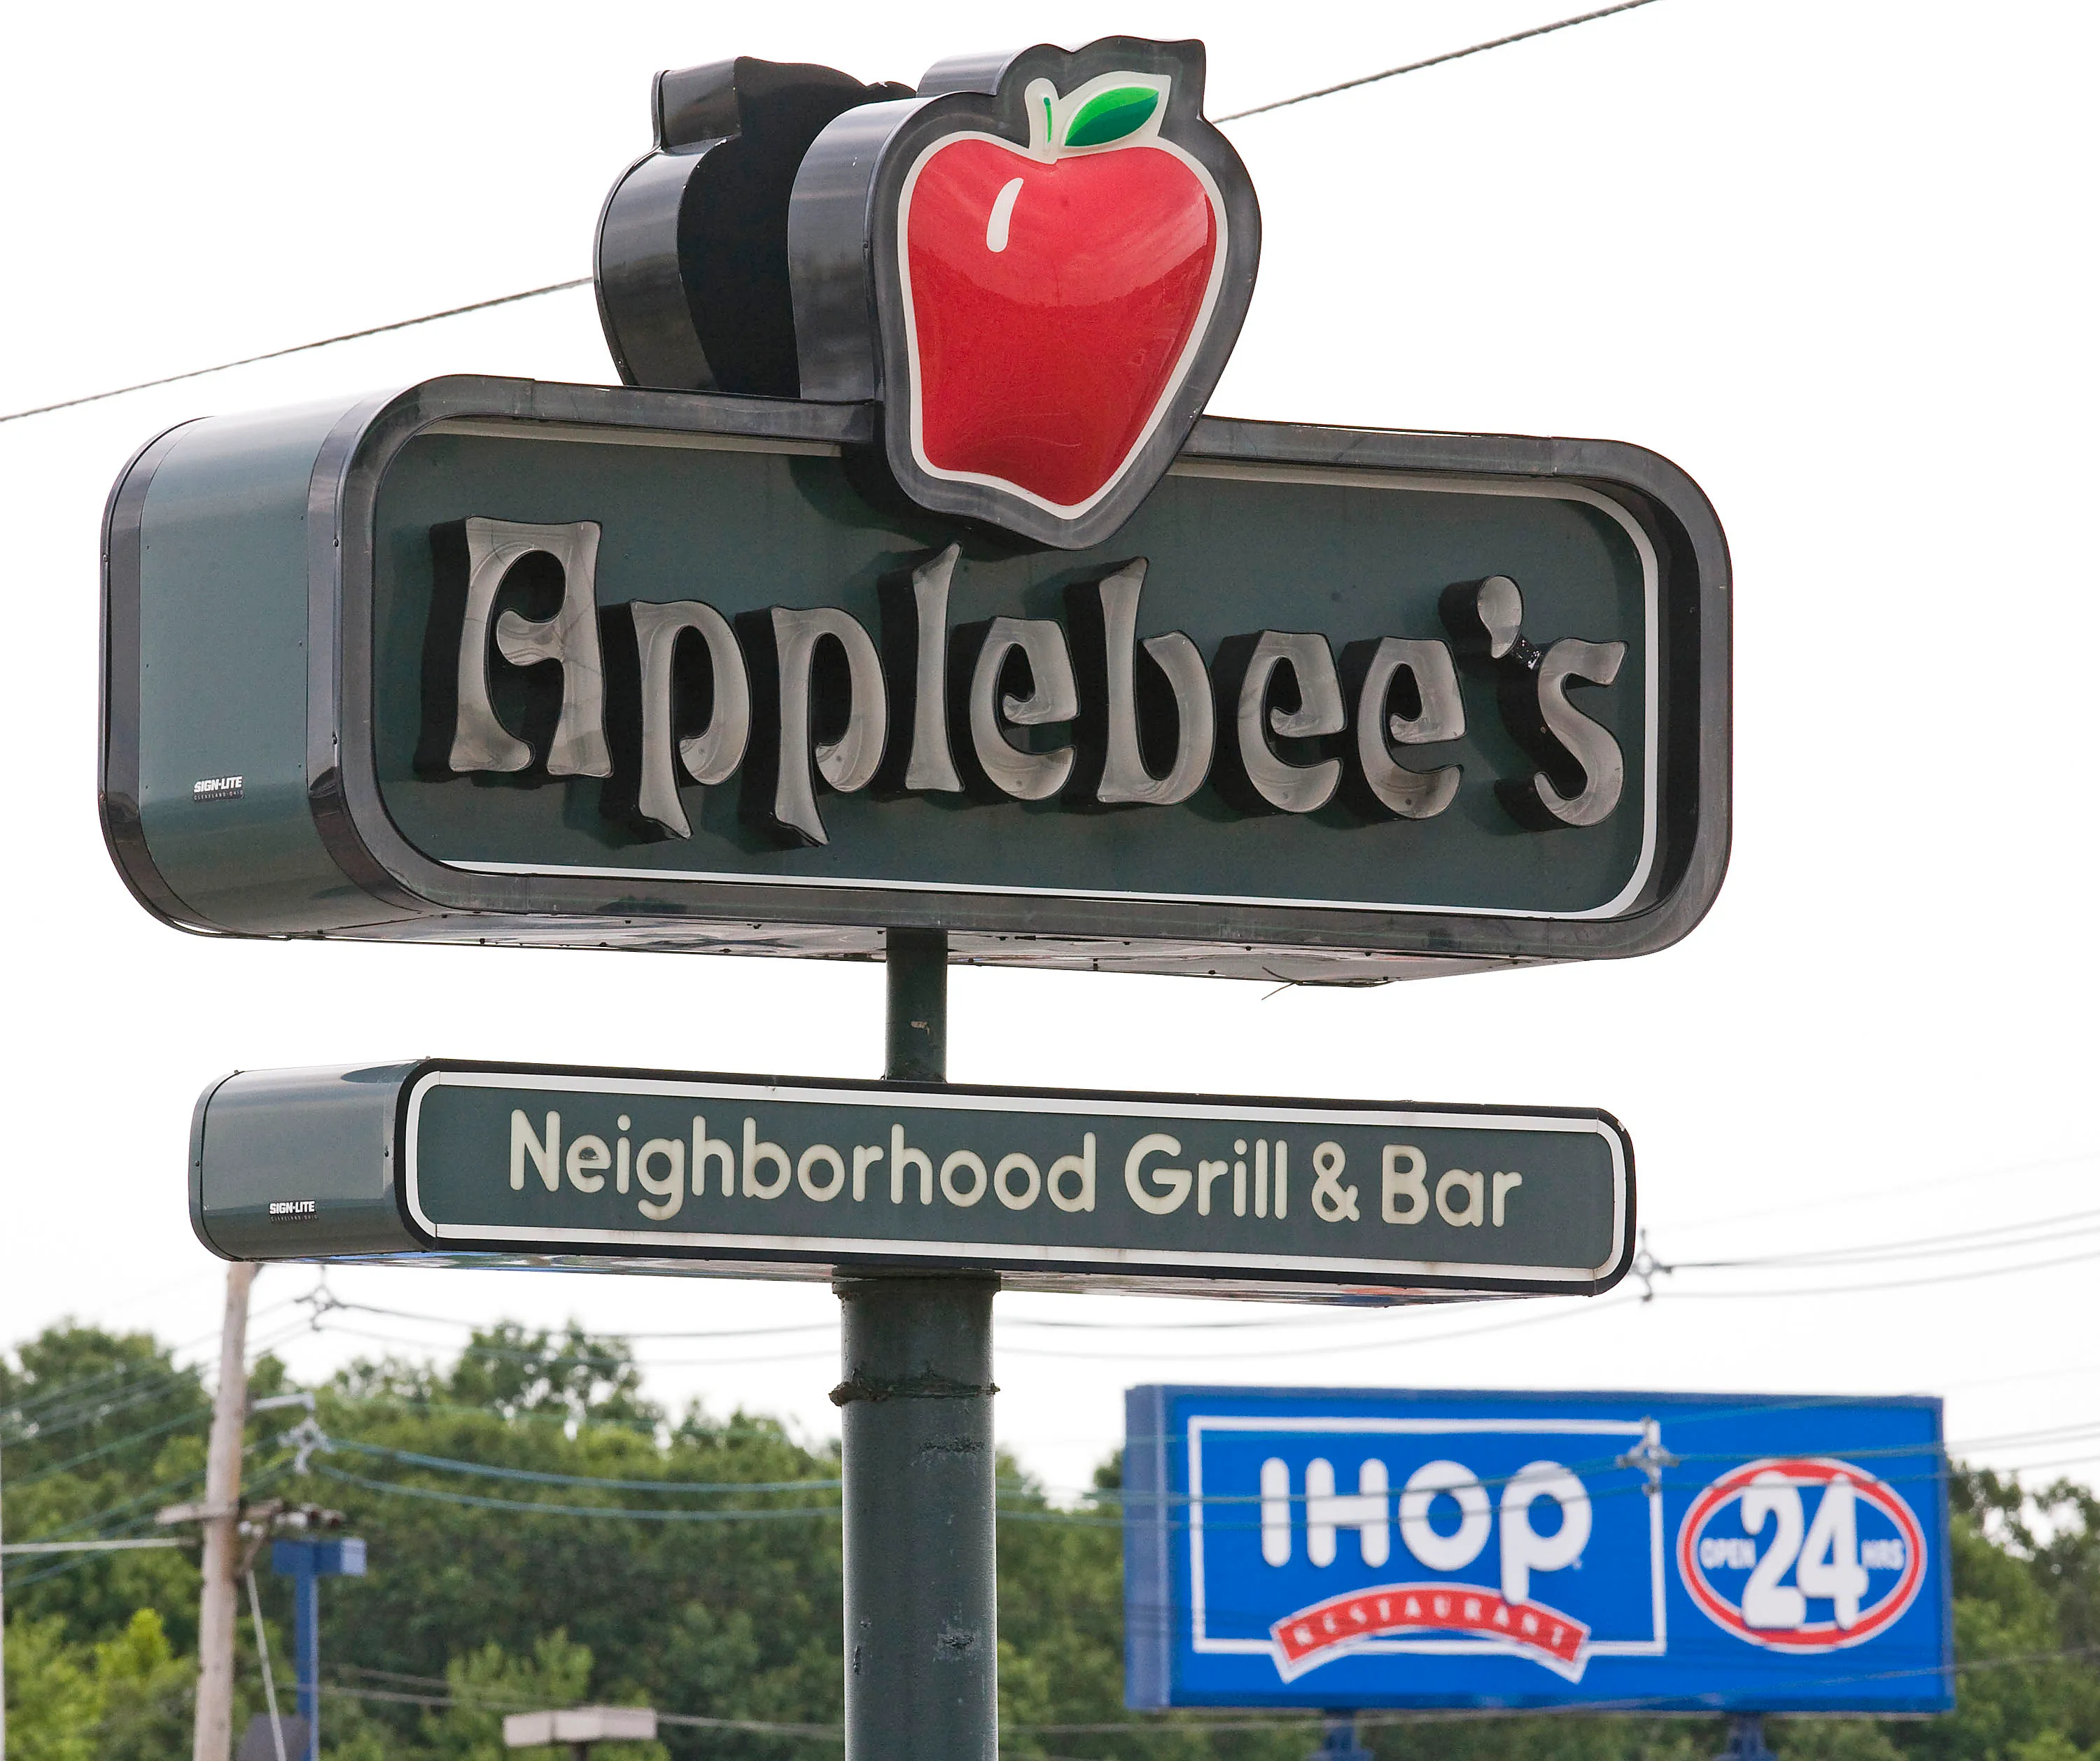 IHOP, Applebee's to pair up